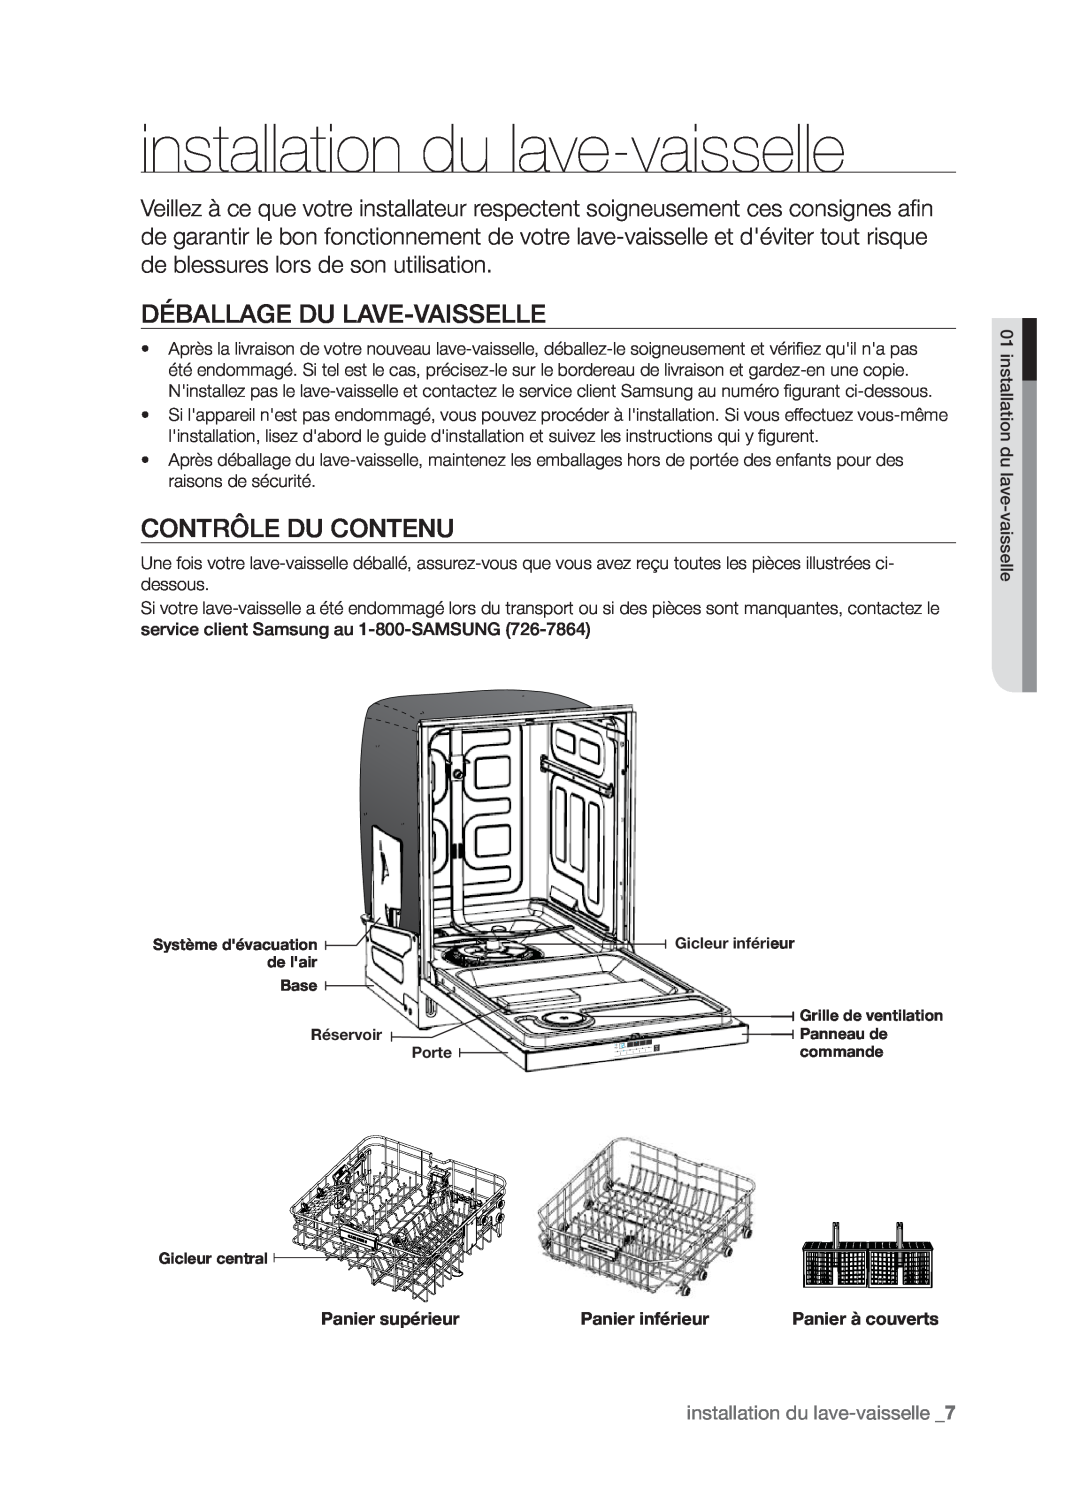 Samsung DMT800DD6800050A, DMT800RHW installation du lave-vaisselle, Déballage Du Lave-Vaisselle, Contrôle Du Contenu 